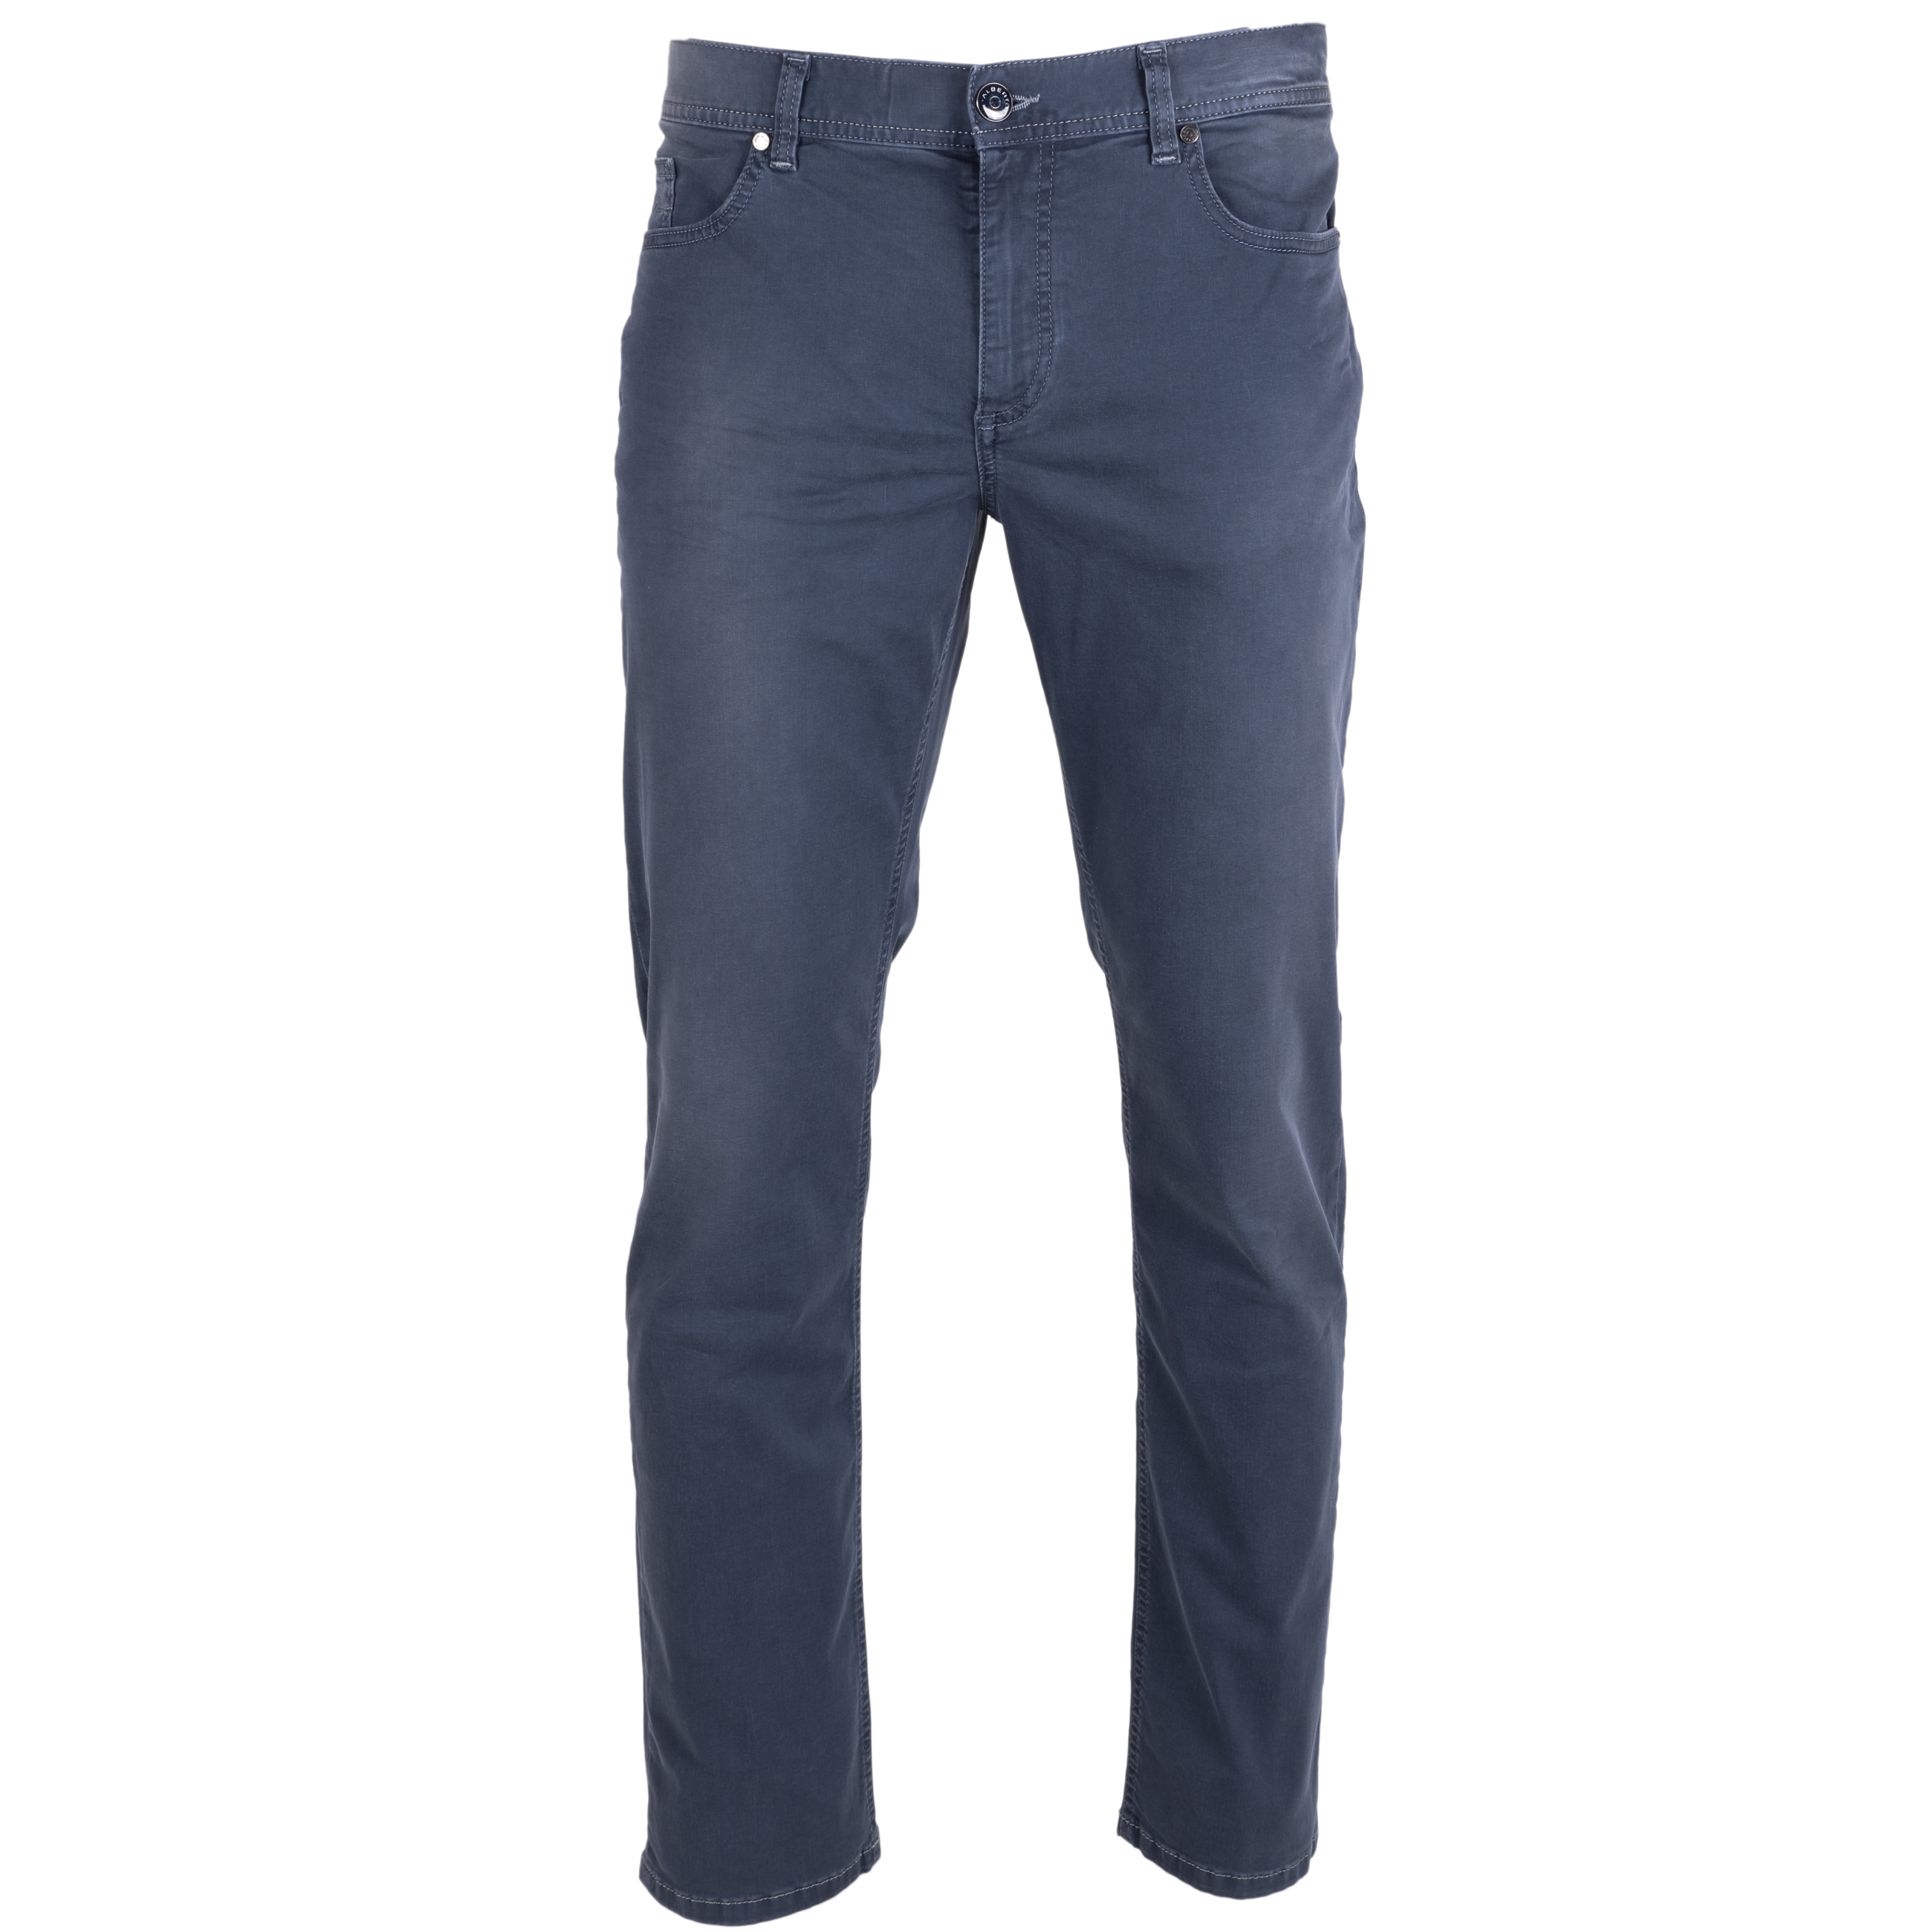 Alberto Jeans Pipe regular fit leichte Qualität 32/32 grau